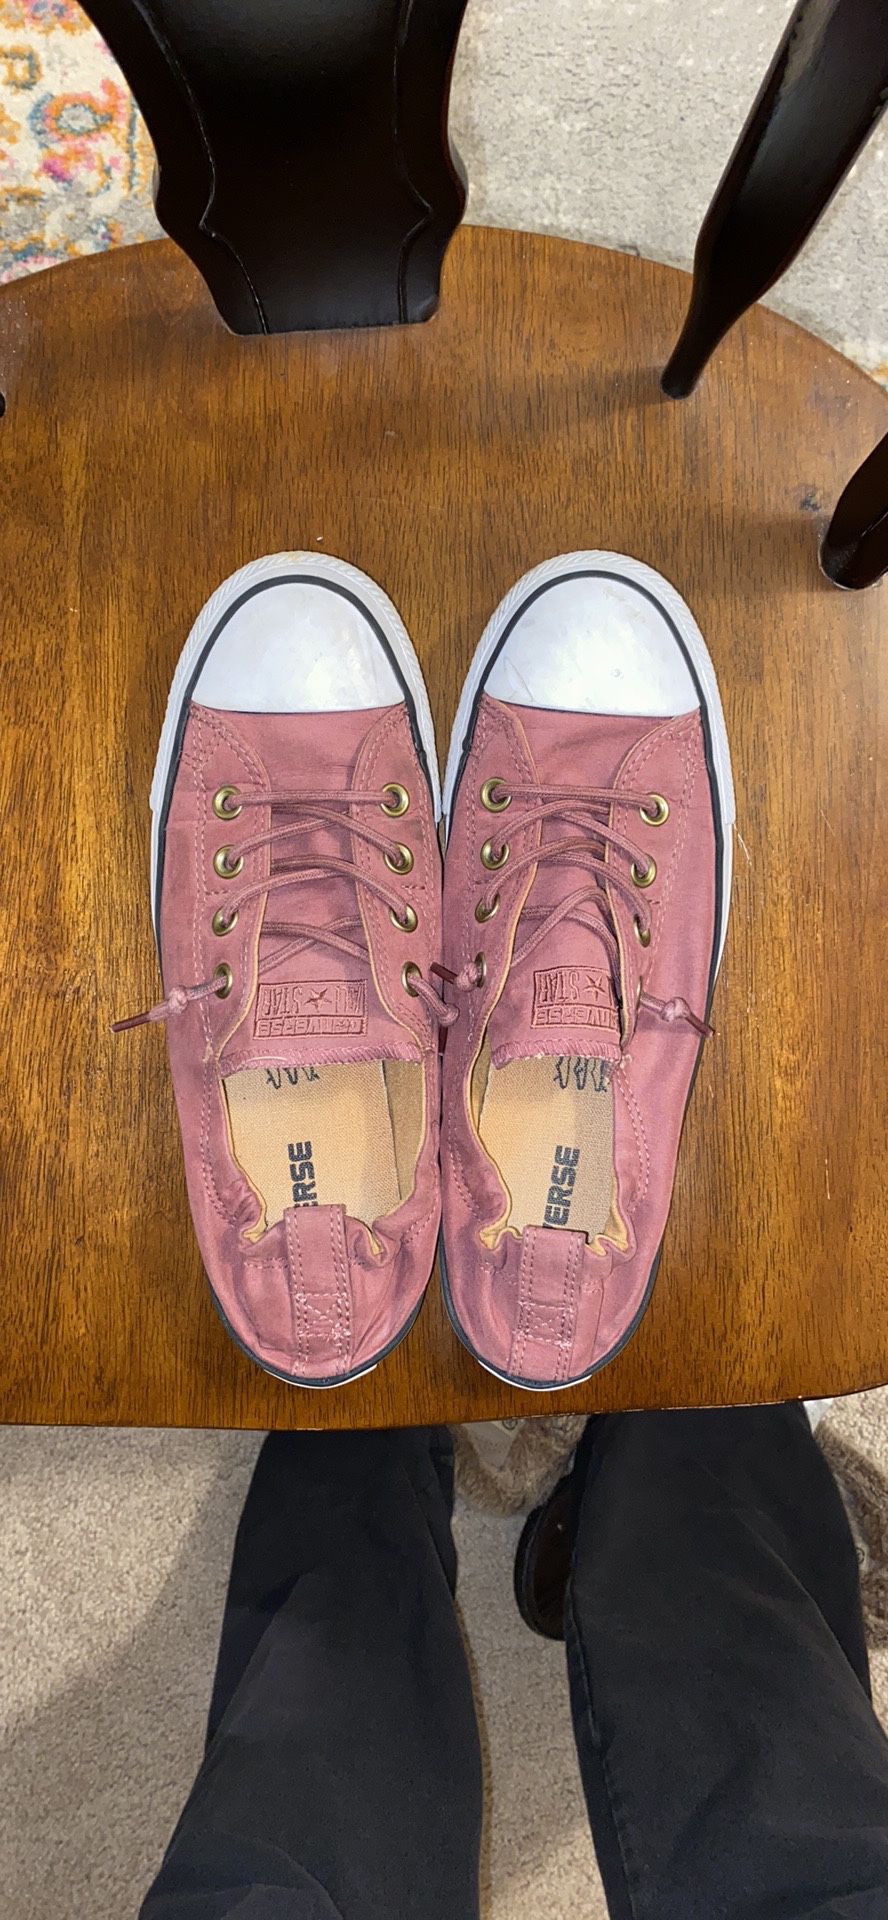 Converse Women’s Shoes